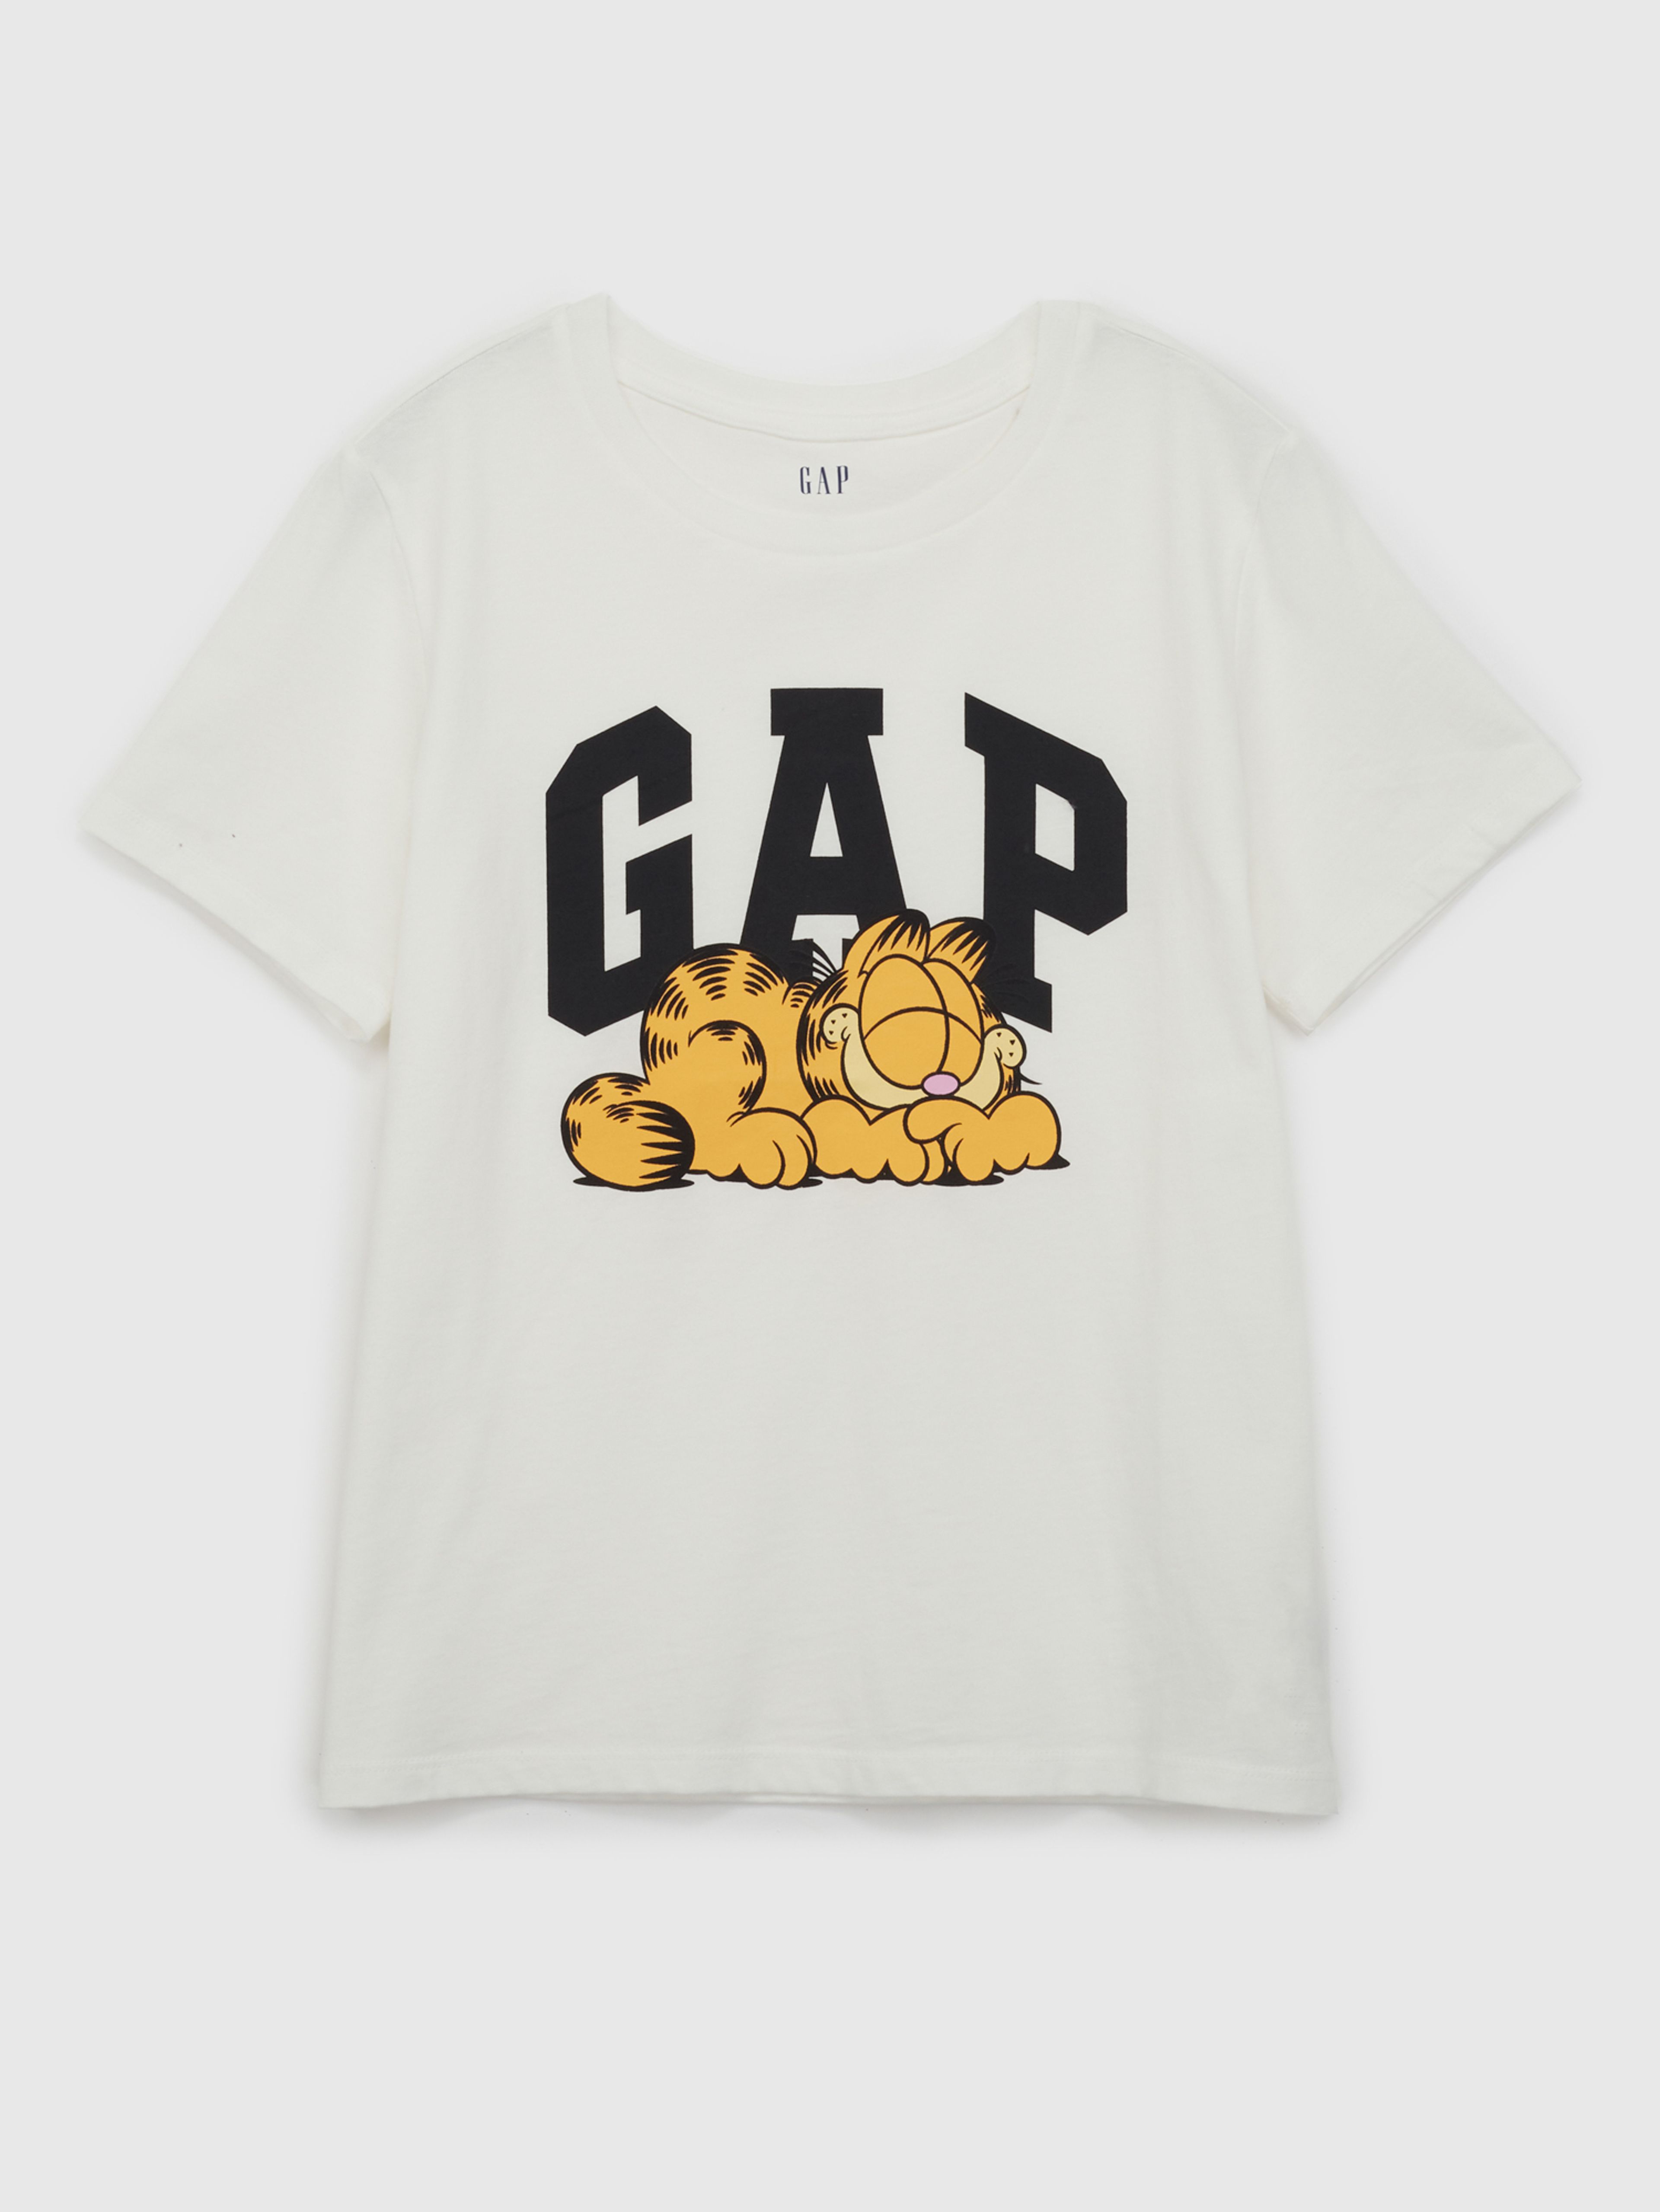 T-Shirt mit Logo GAP & Garfield